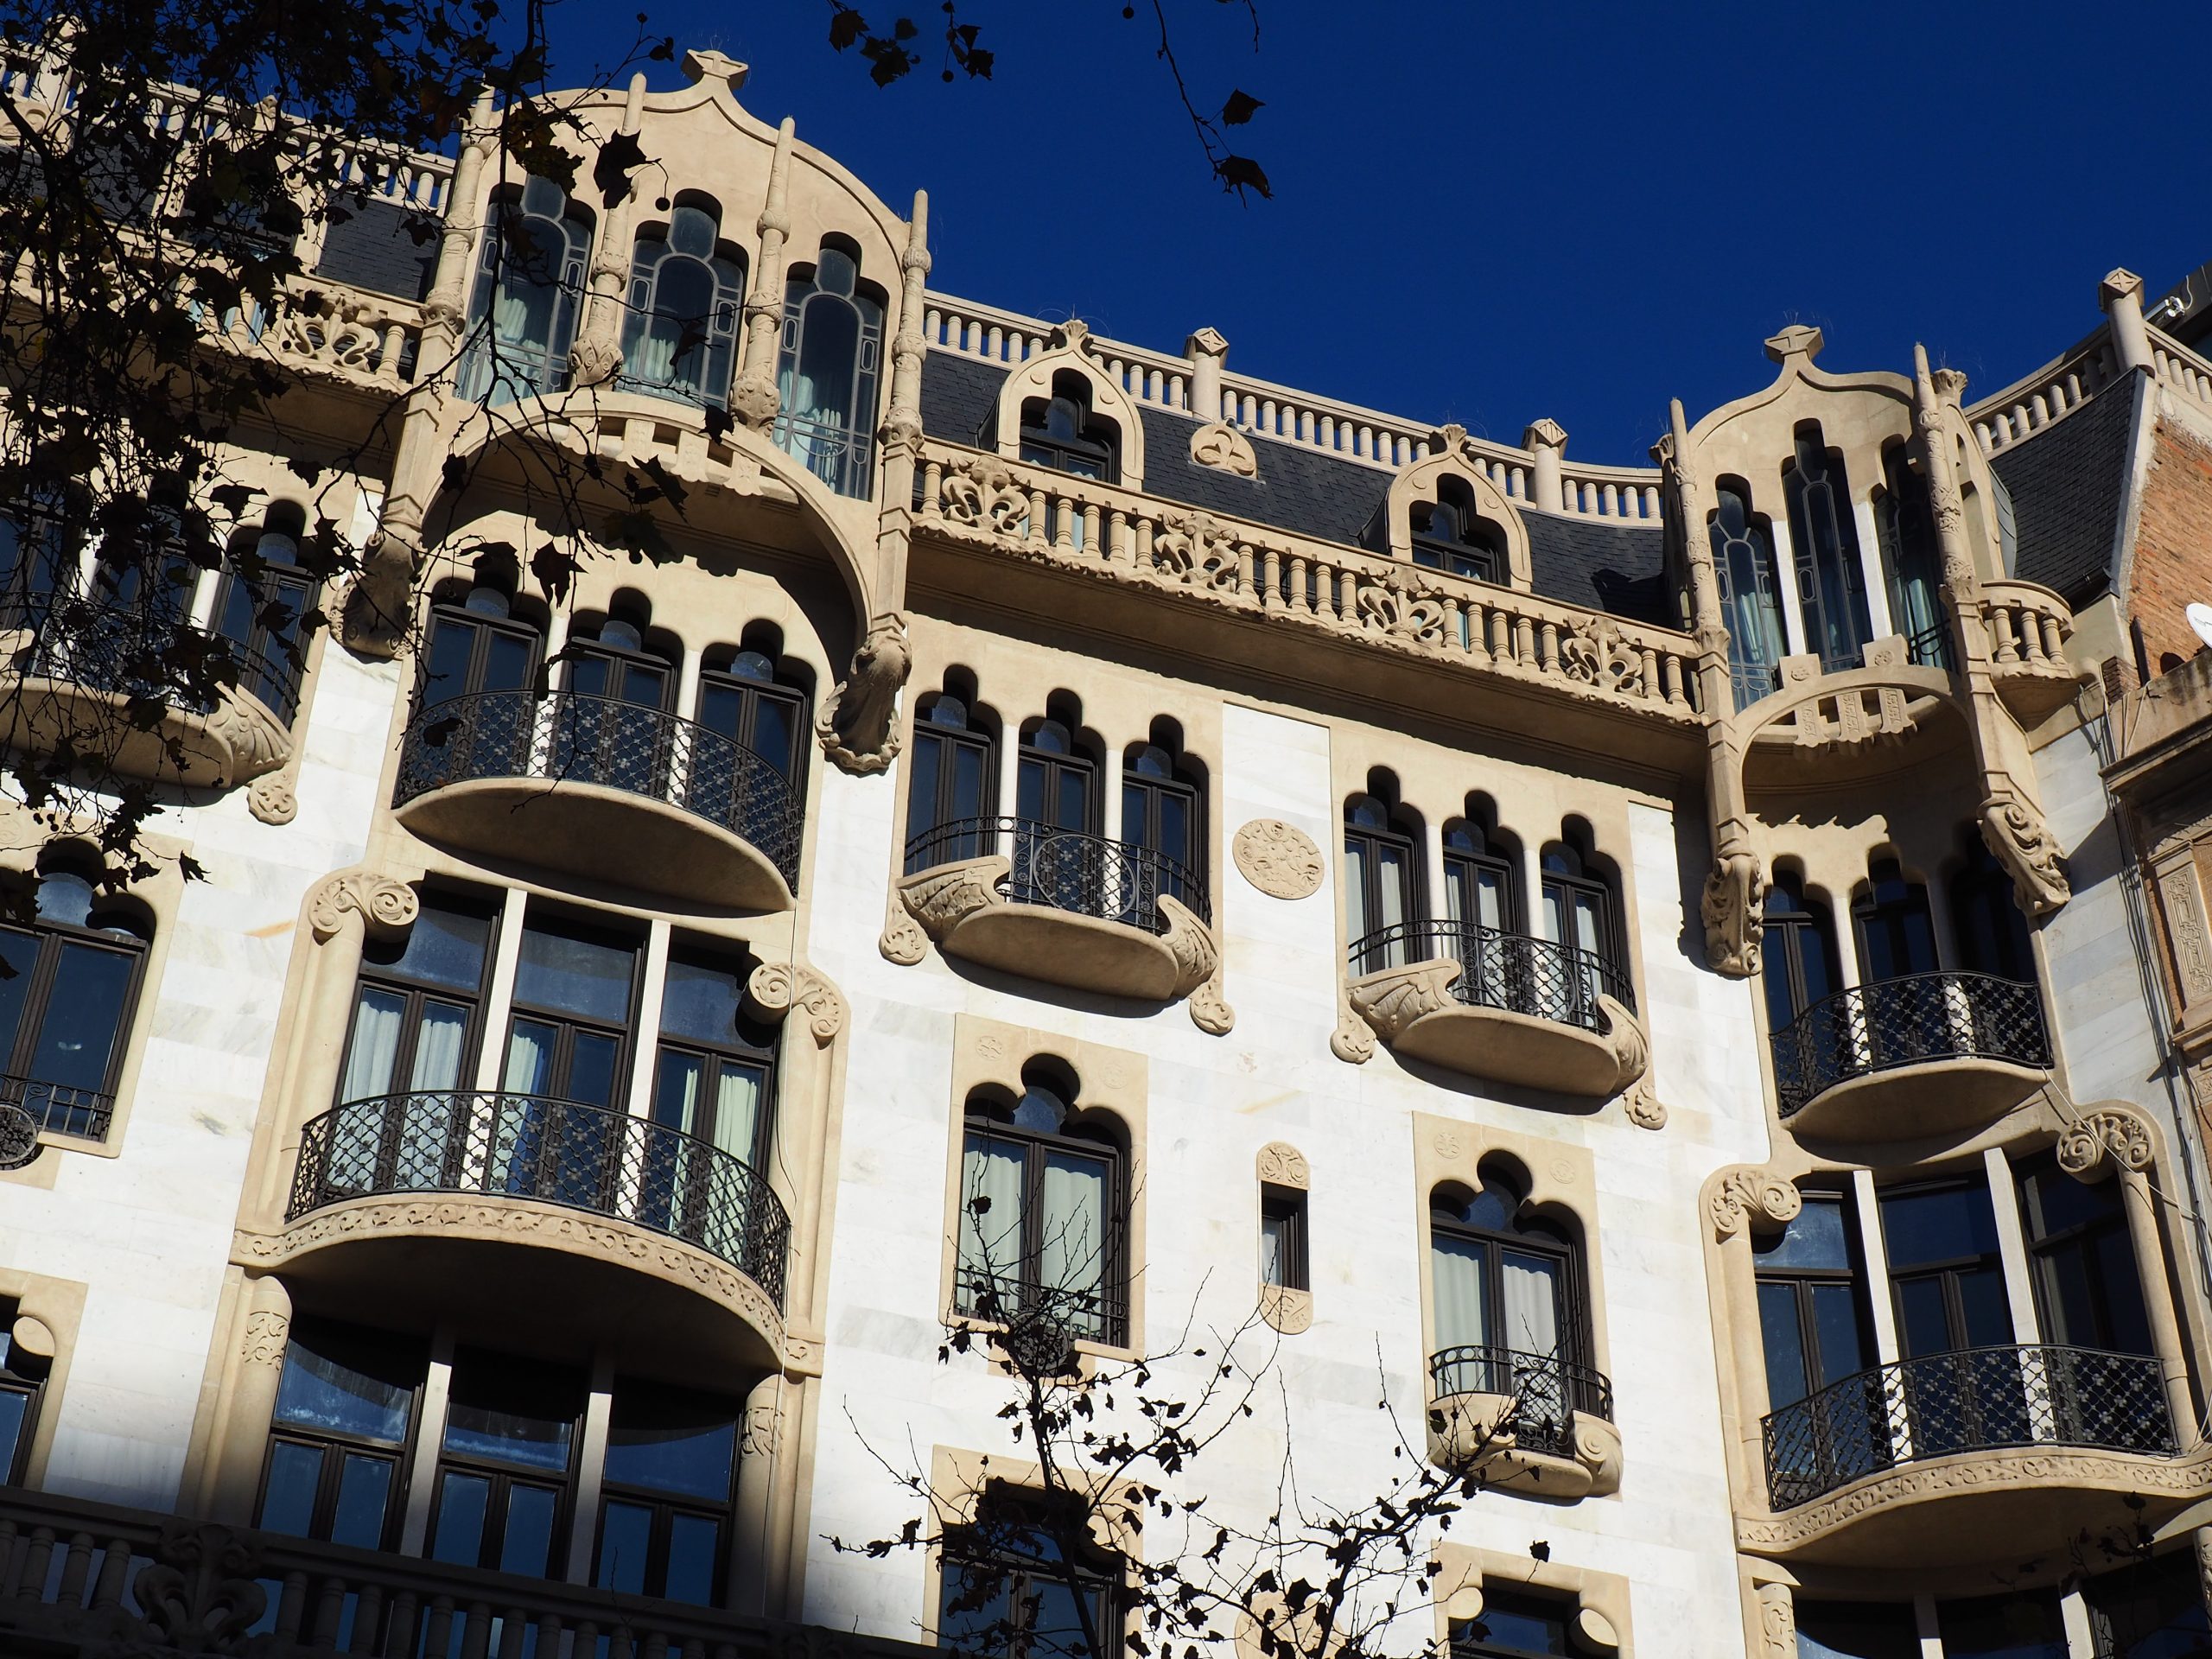 Facciata di un edificio modernista in Passeig de Gracia, Barcellona visite guidate in italiano.